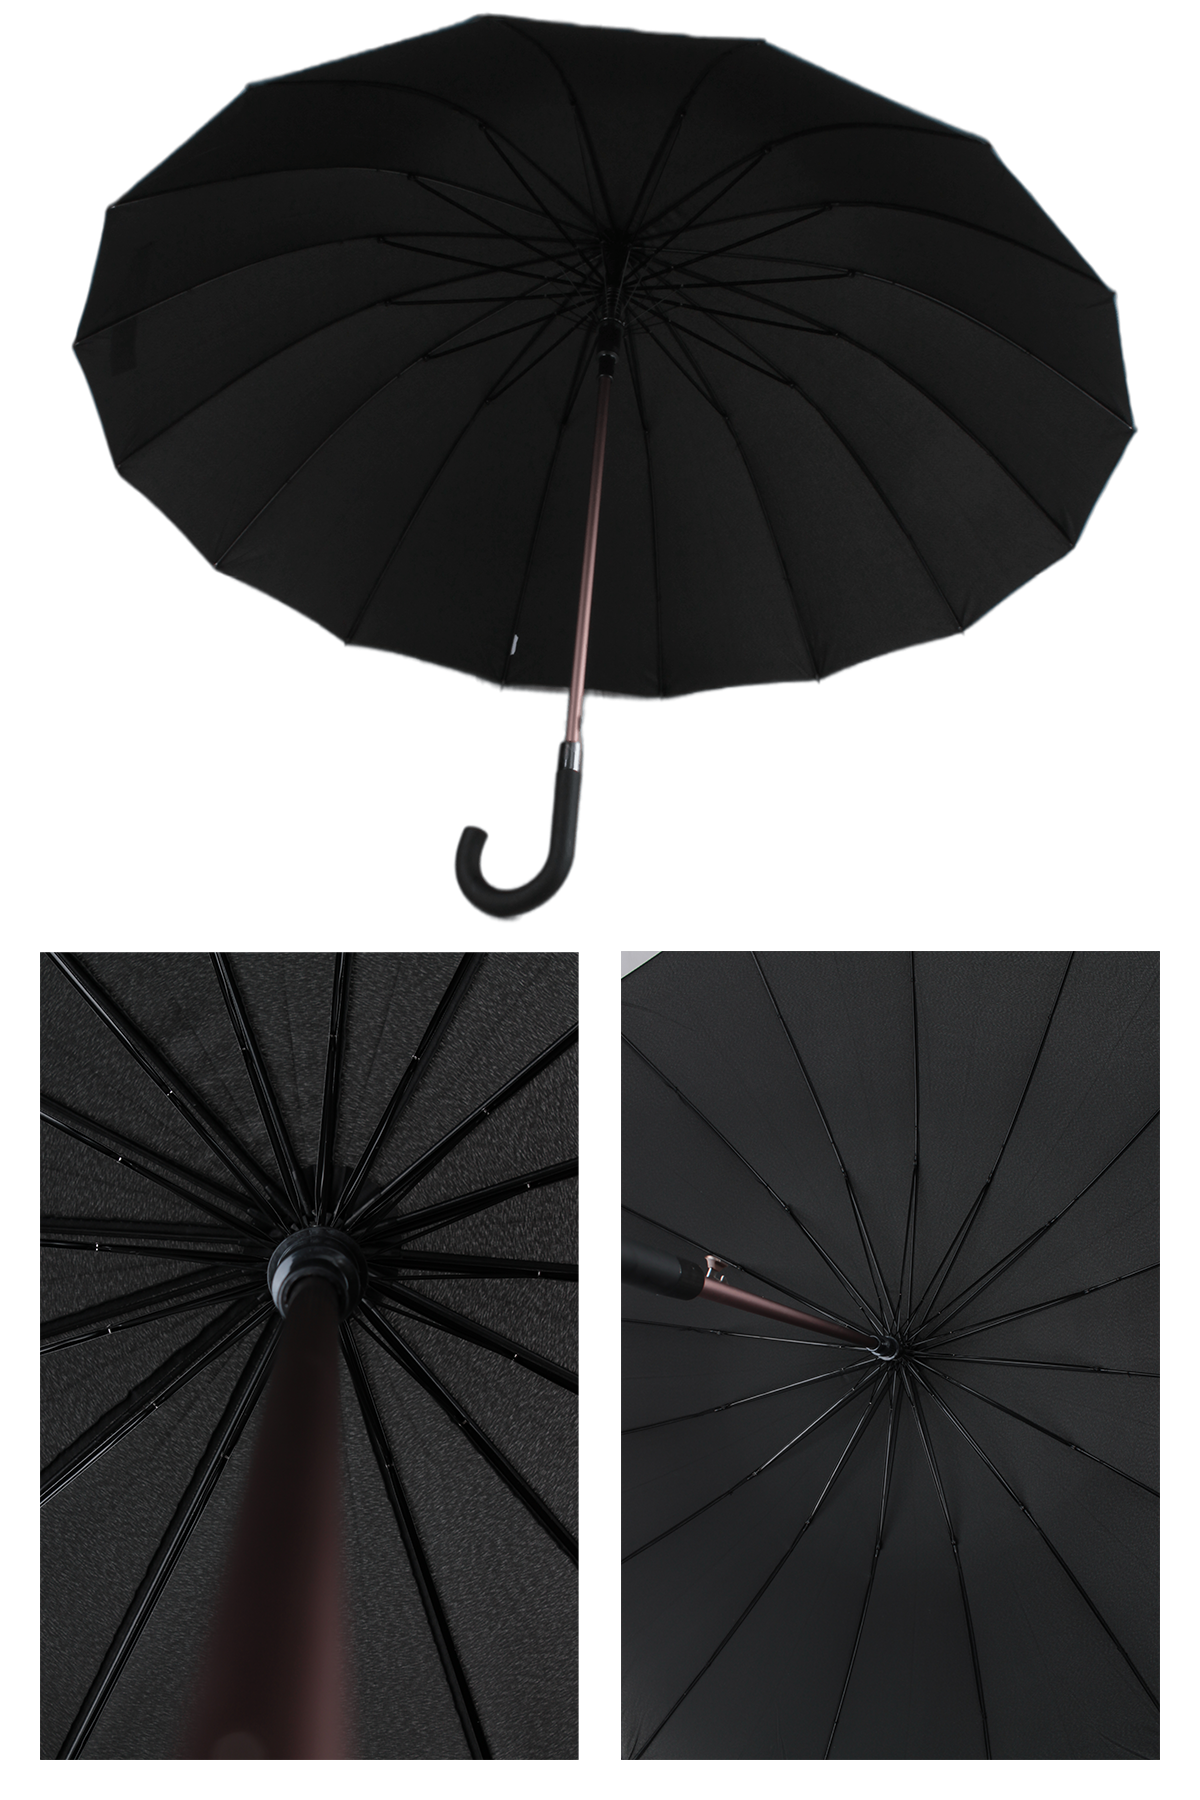 Marlux 16 telli fiberglass kırılmaz rüzgar korumalı lüx premium şemsiye  MAR10141